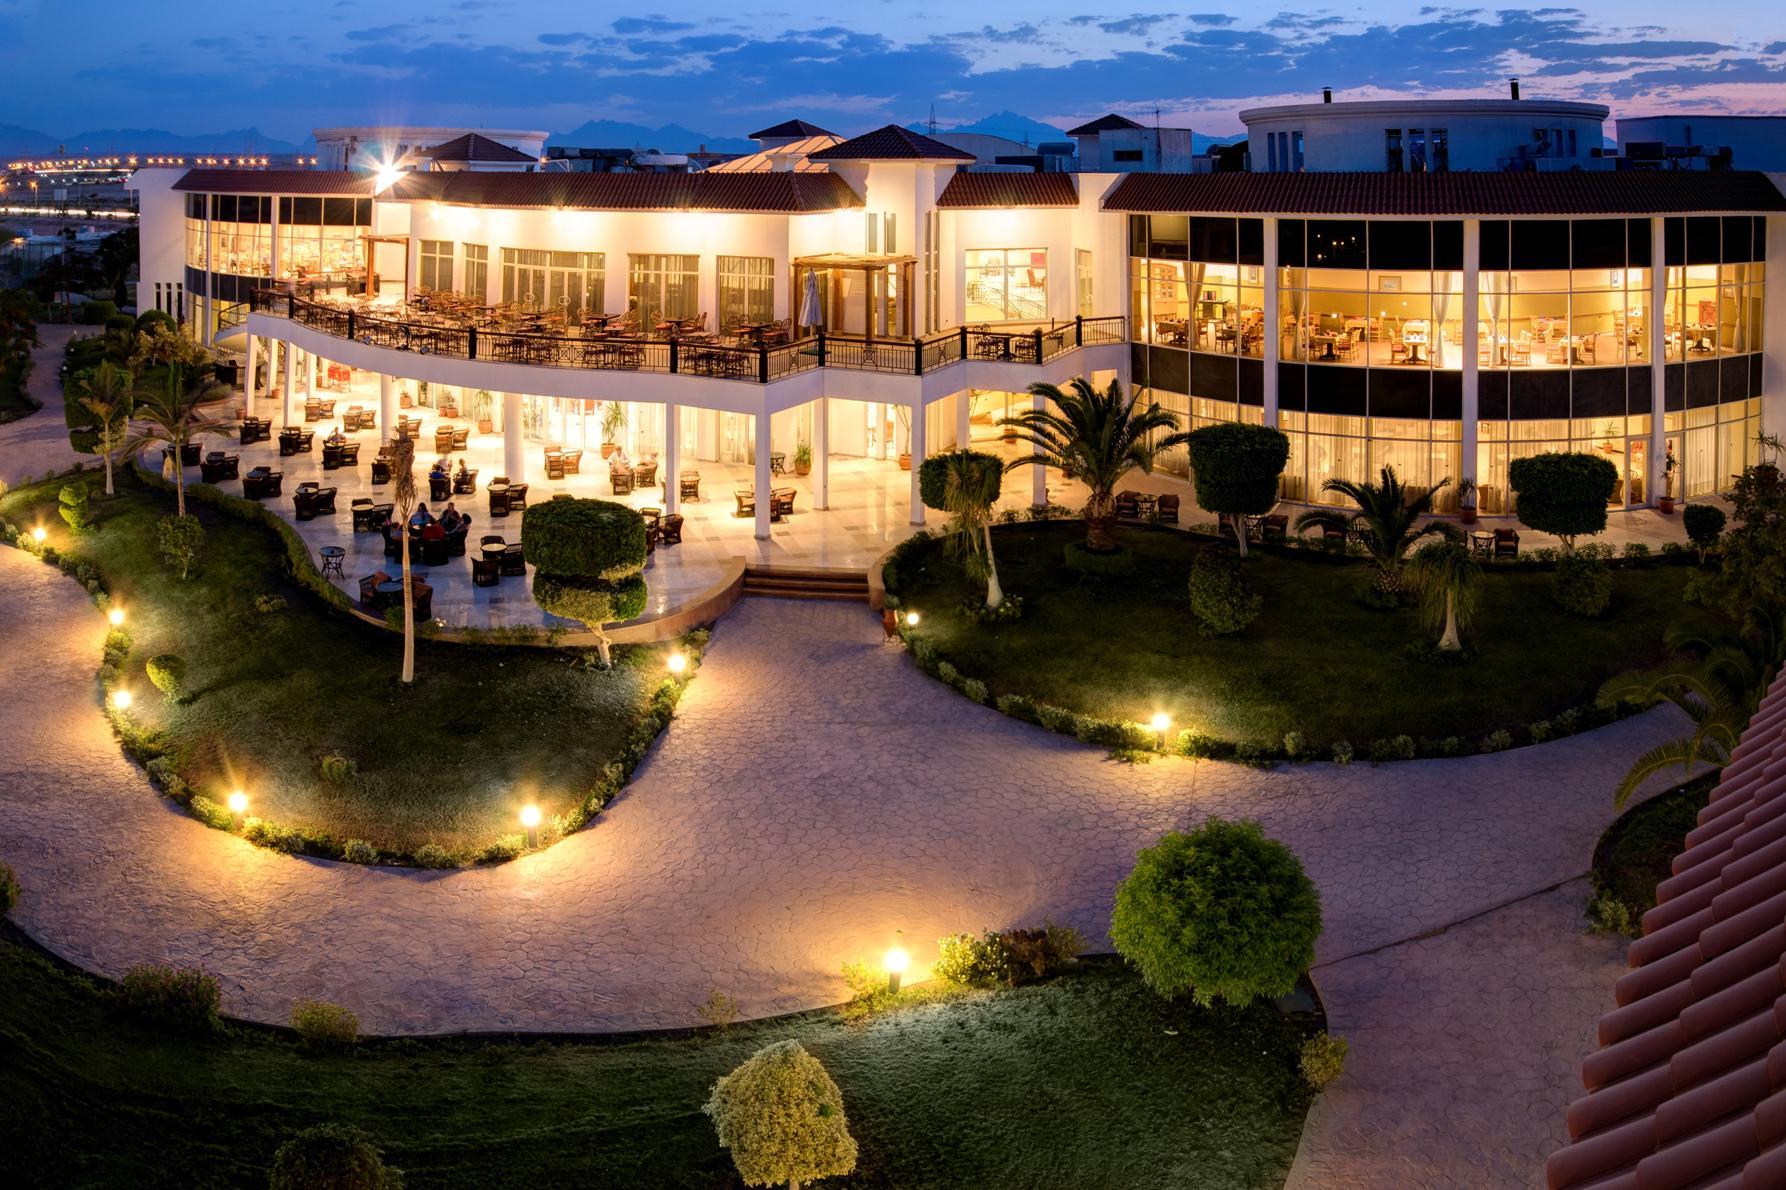 Sunrise Alma Bay Resort Hurghada Buitenkant foto